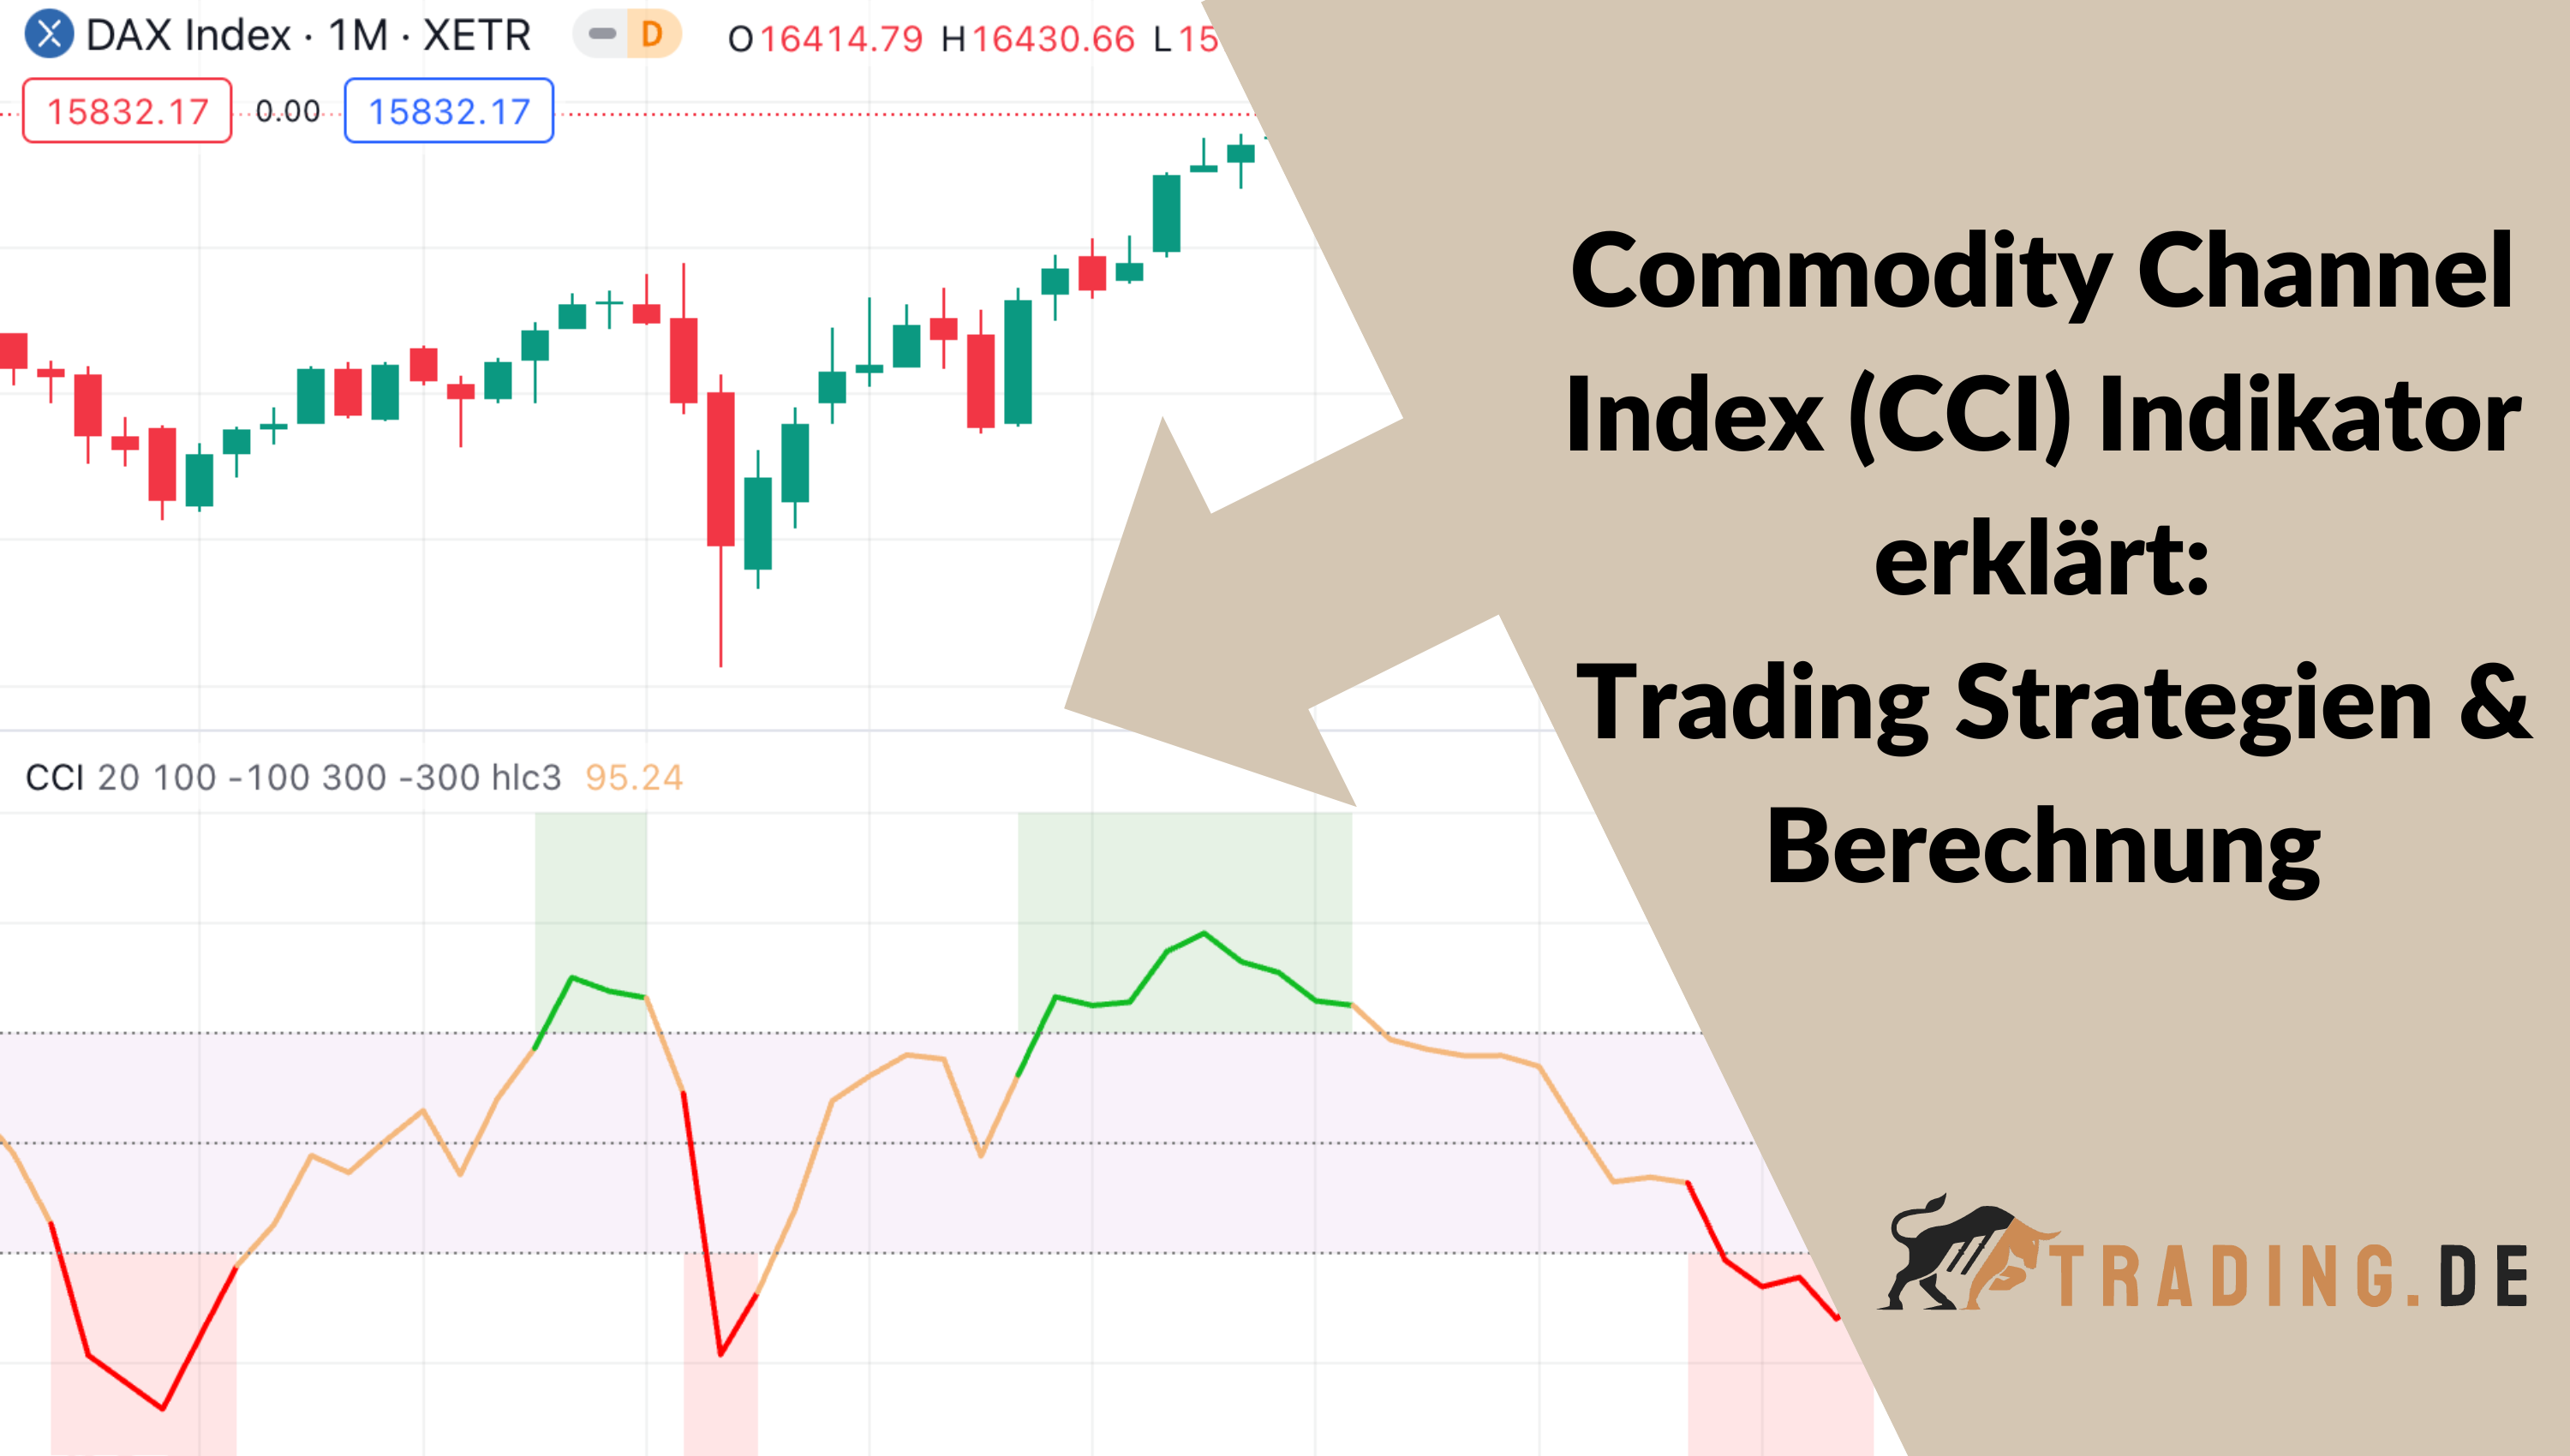 Commodity Channel Index (CCI) Indikator erklärt: Trading Strategien & Berechnung